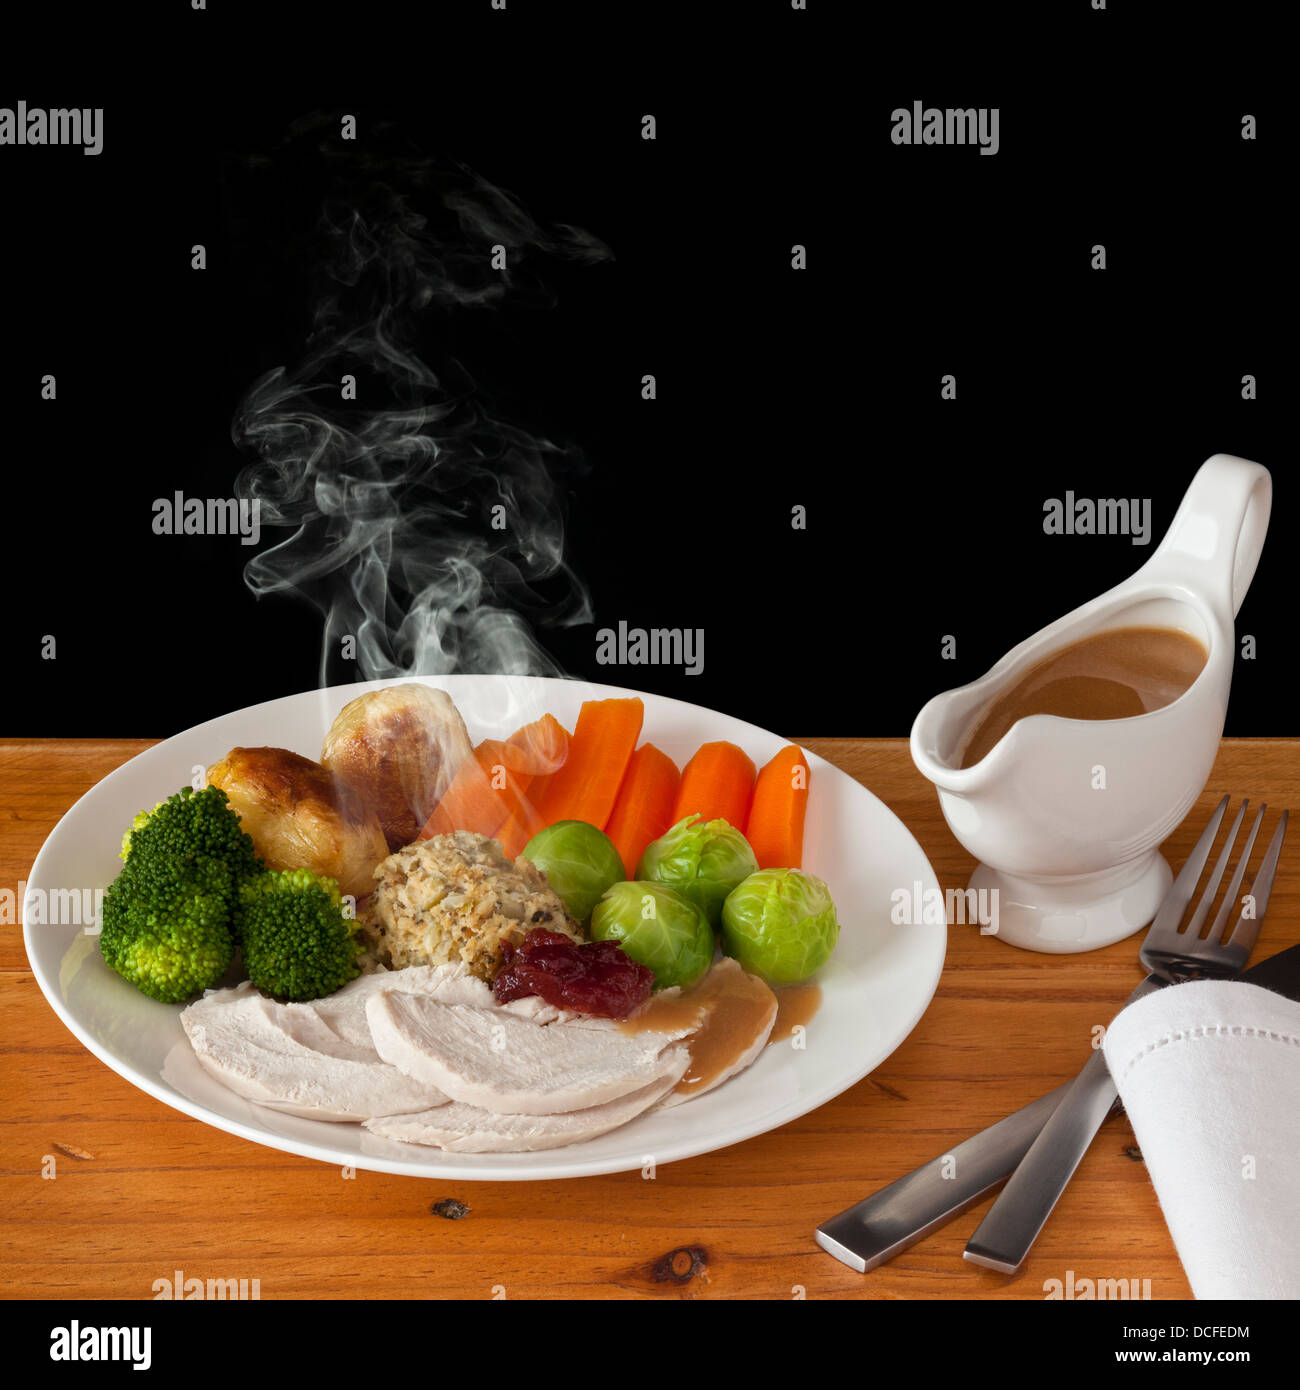 Poulet rôti - un dîner typique de Noël déjeuner avec l'augmentation de vapeur visible, avec l'espace pour votre propre texte. Banque D'Images